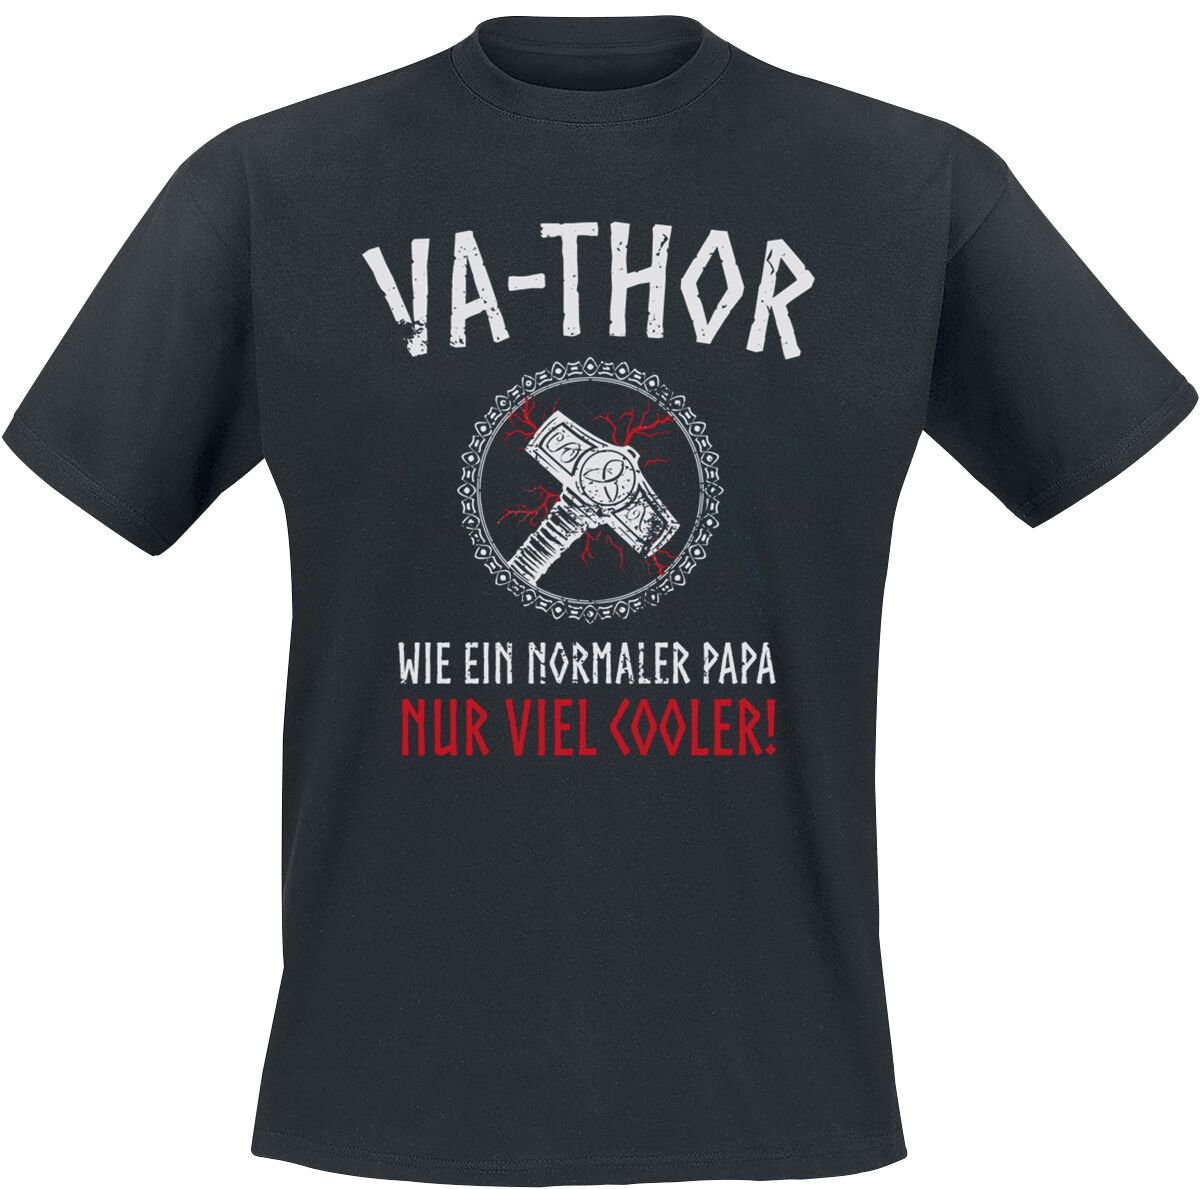 Familie & Freunde T-Shirt - Va-Thor - S bis 4XL - für Männer - Größe 3XL - schwarz